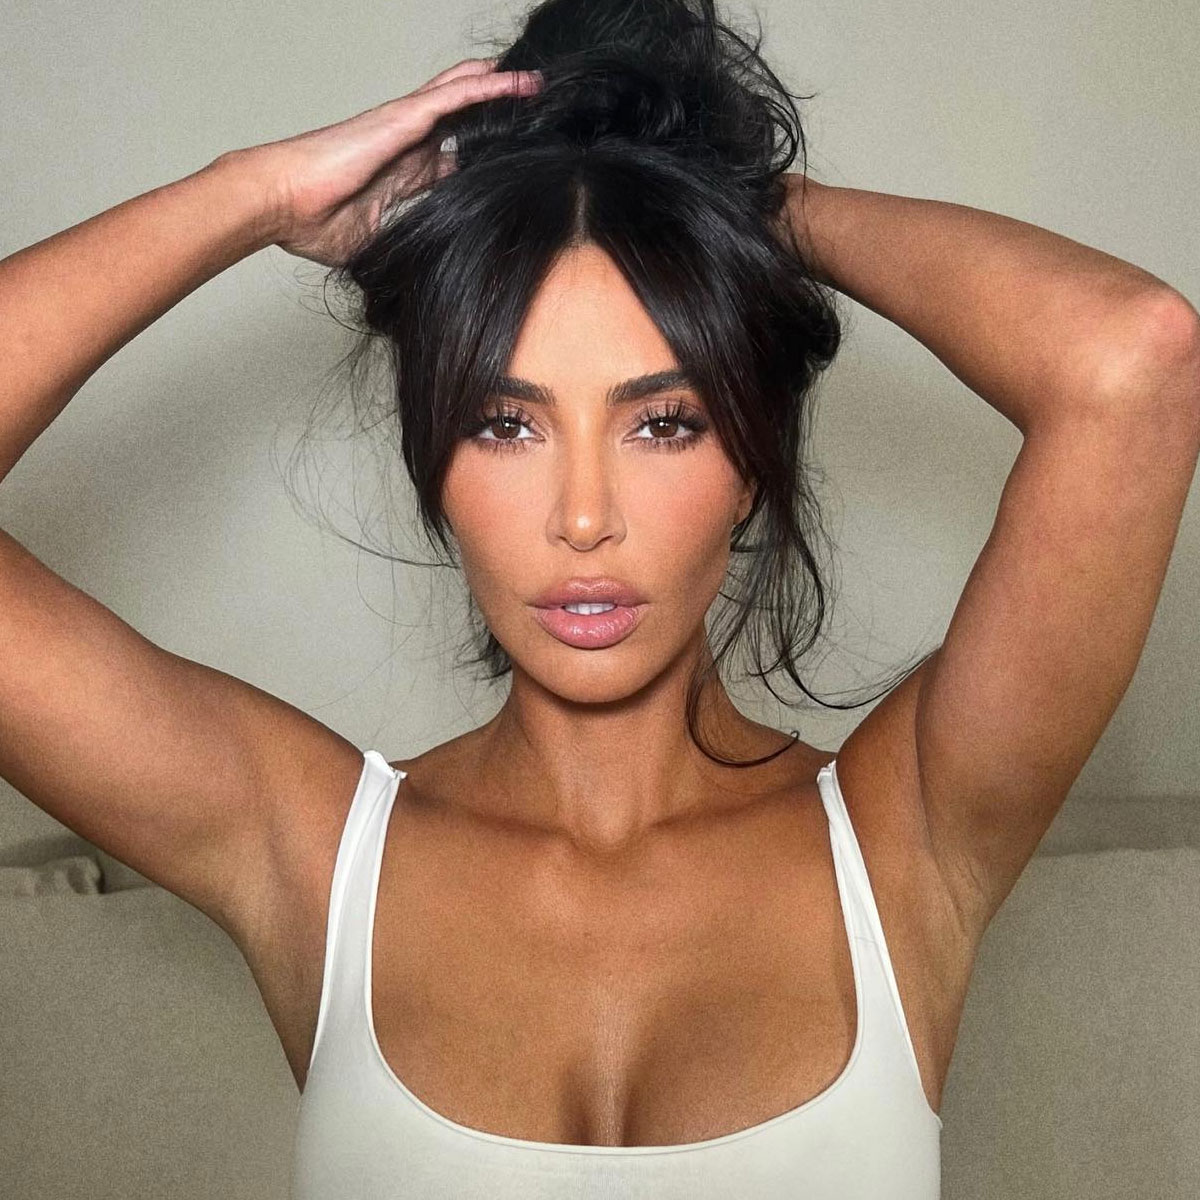 Kim Kardashian's Tour of Her Dolce & Gabbana Collaboration